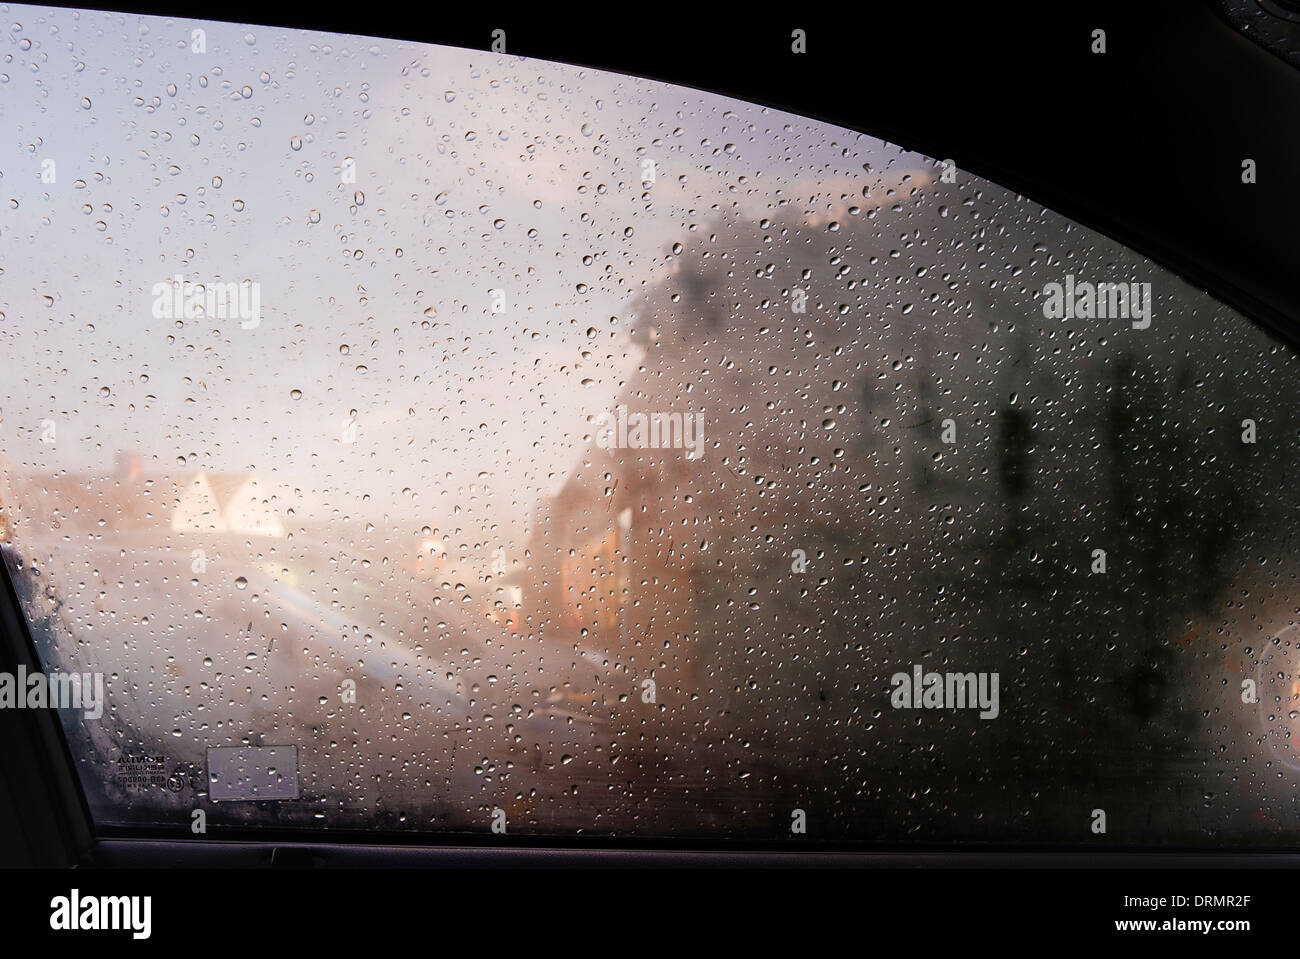 Sichtbarkeit reduziert, wenn die Seitenscheibe des Autos mit Kondensation während eines Regenschauers beschlagen ist Stockfoto